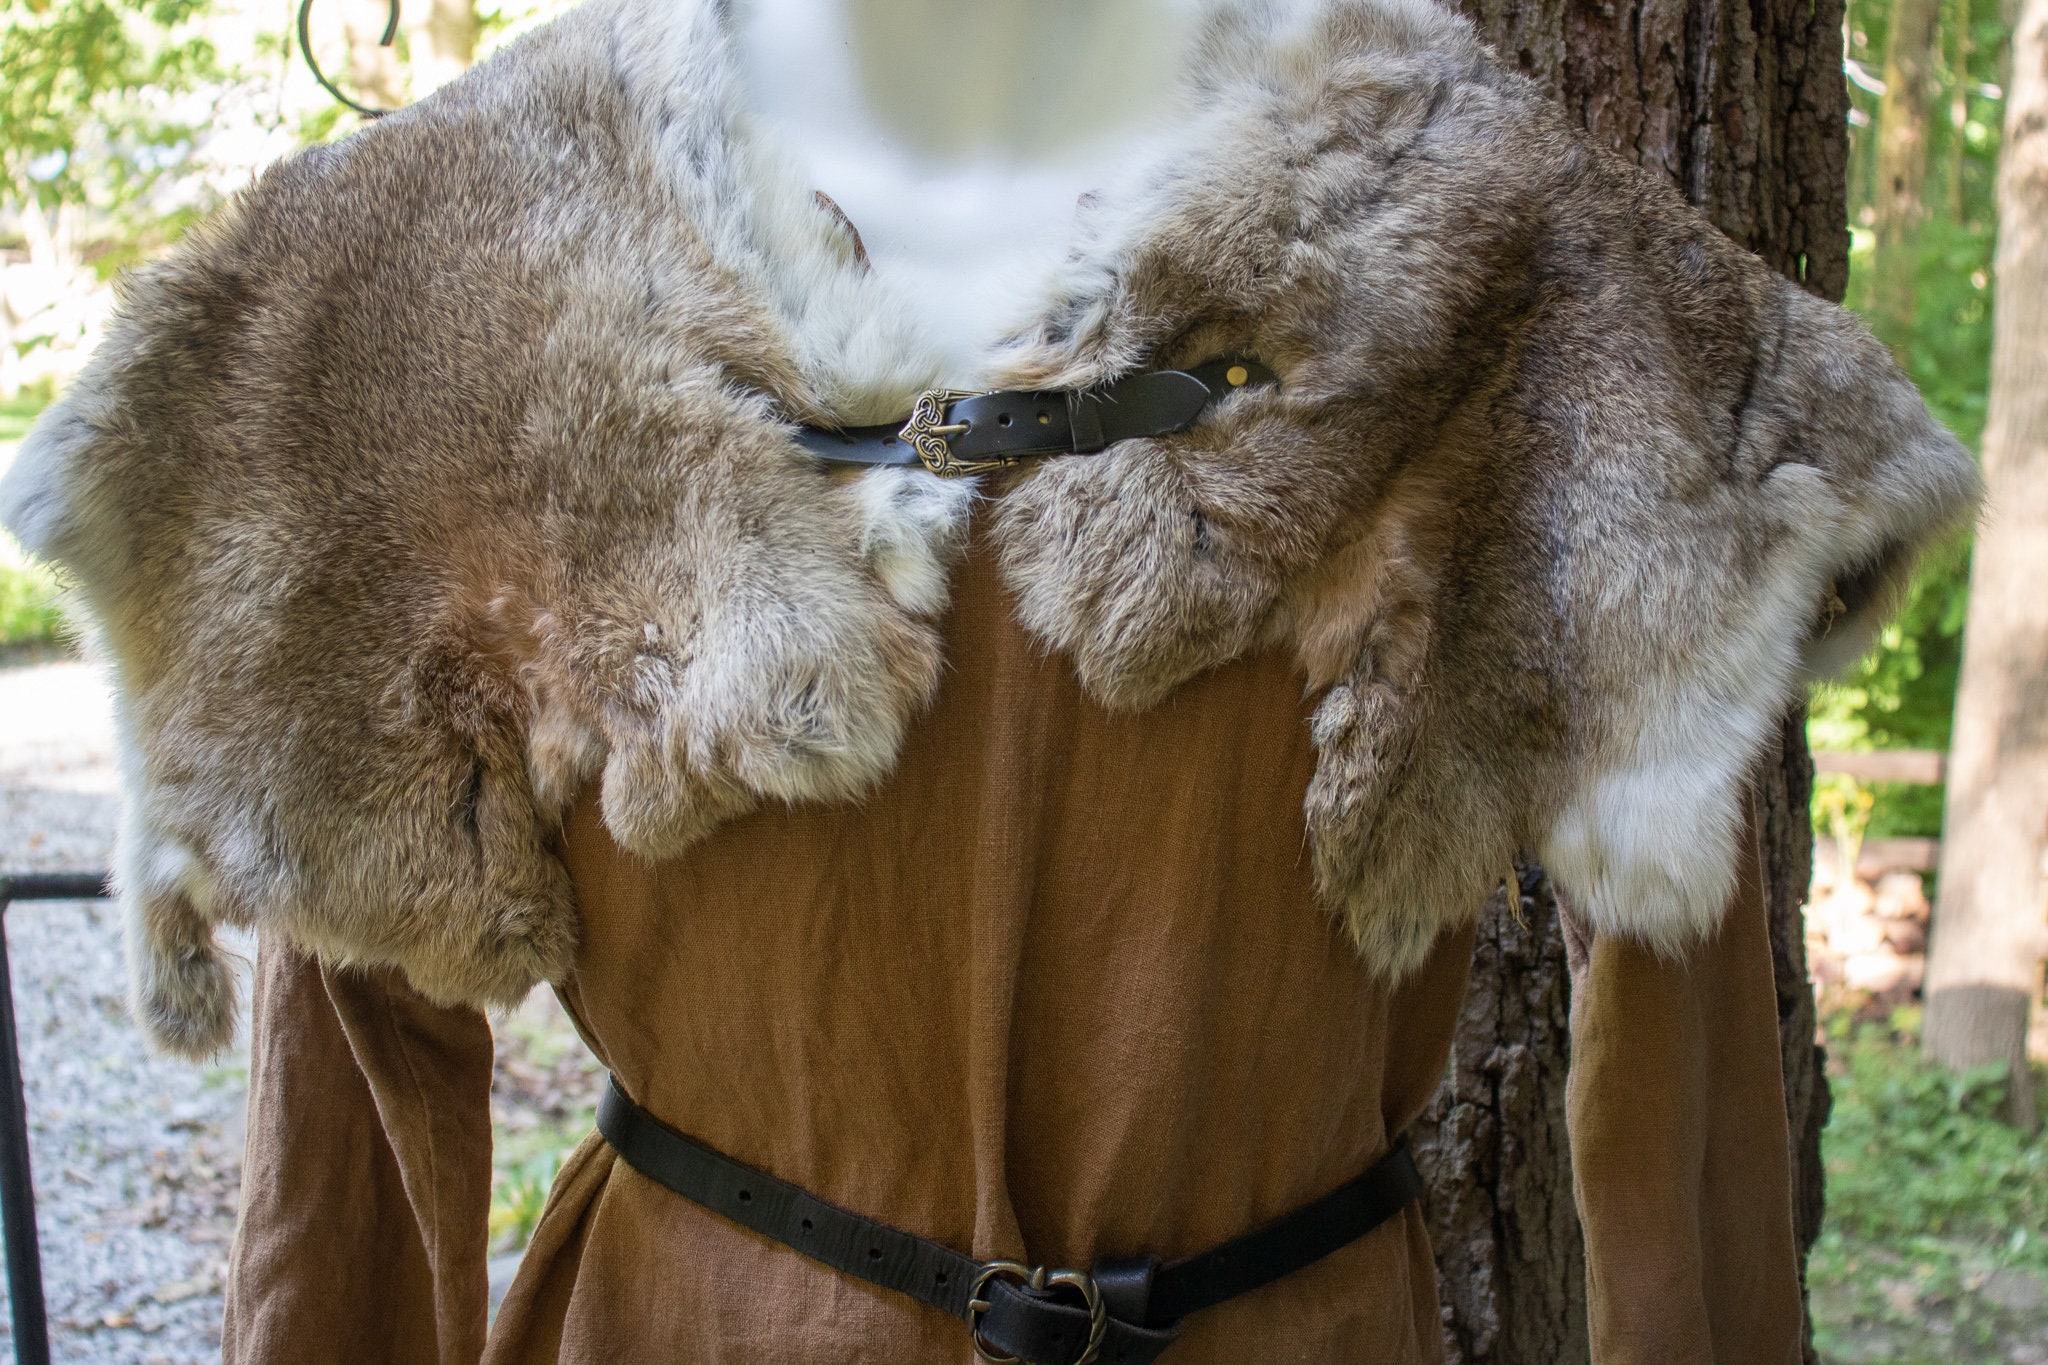 Viking Fur Mantle, Medieval Faux Fur Cape Capelet Choose Size /P